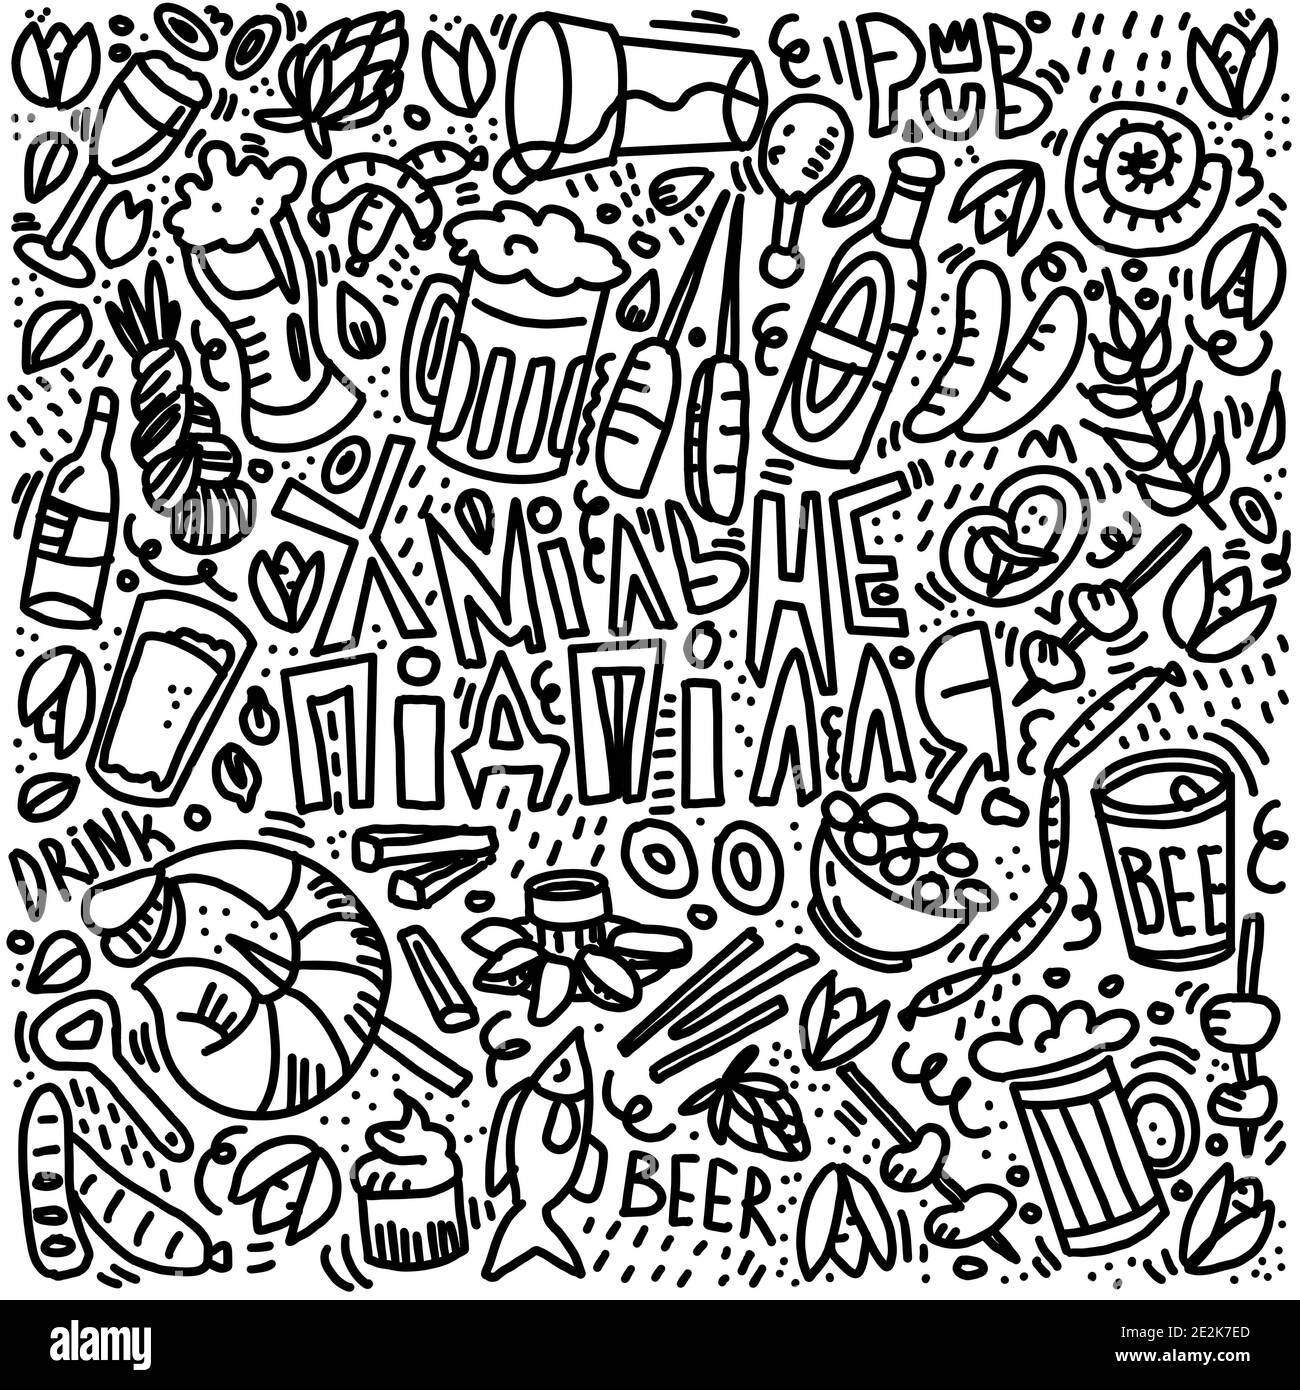 Illustration de style Doodle pour le design de pub, les menus de restaurant, la signalisation, les textiles. Banque D'Images